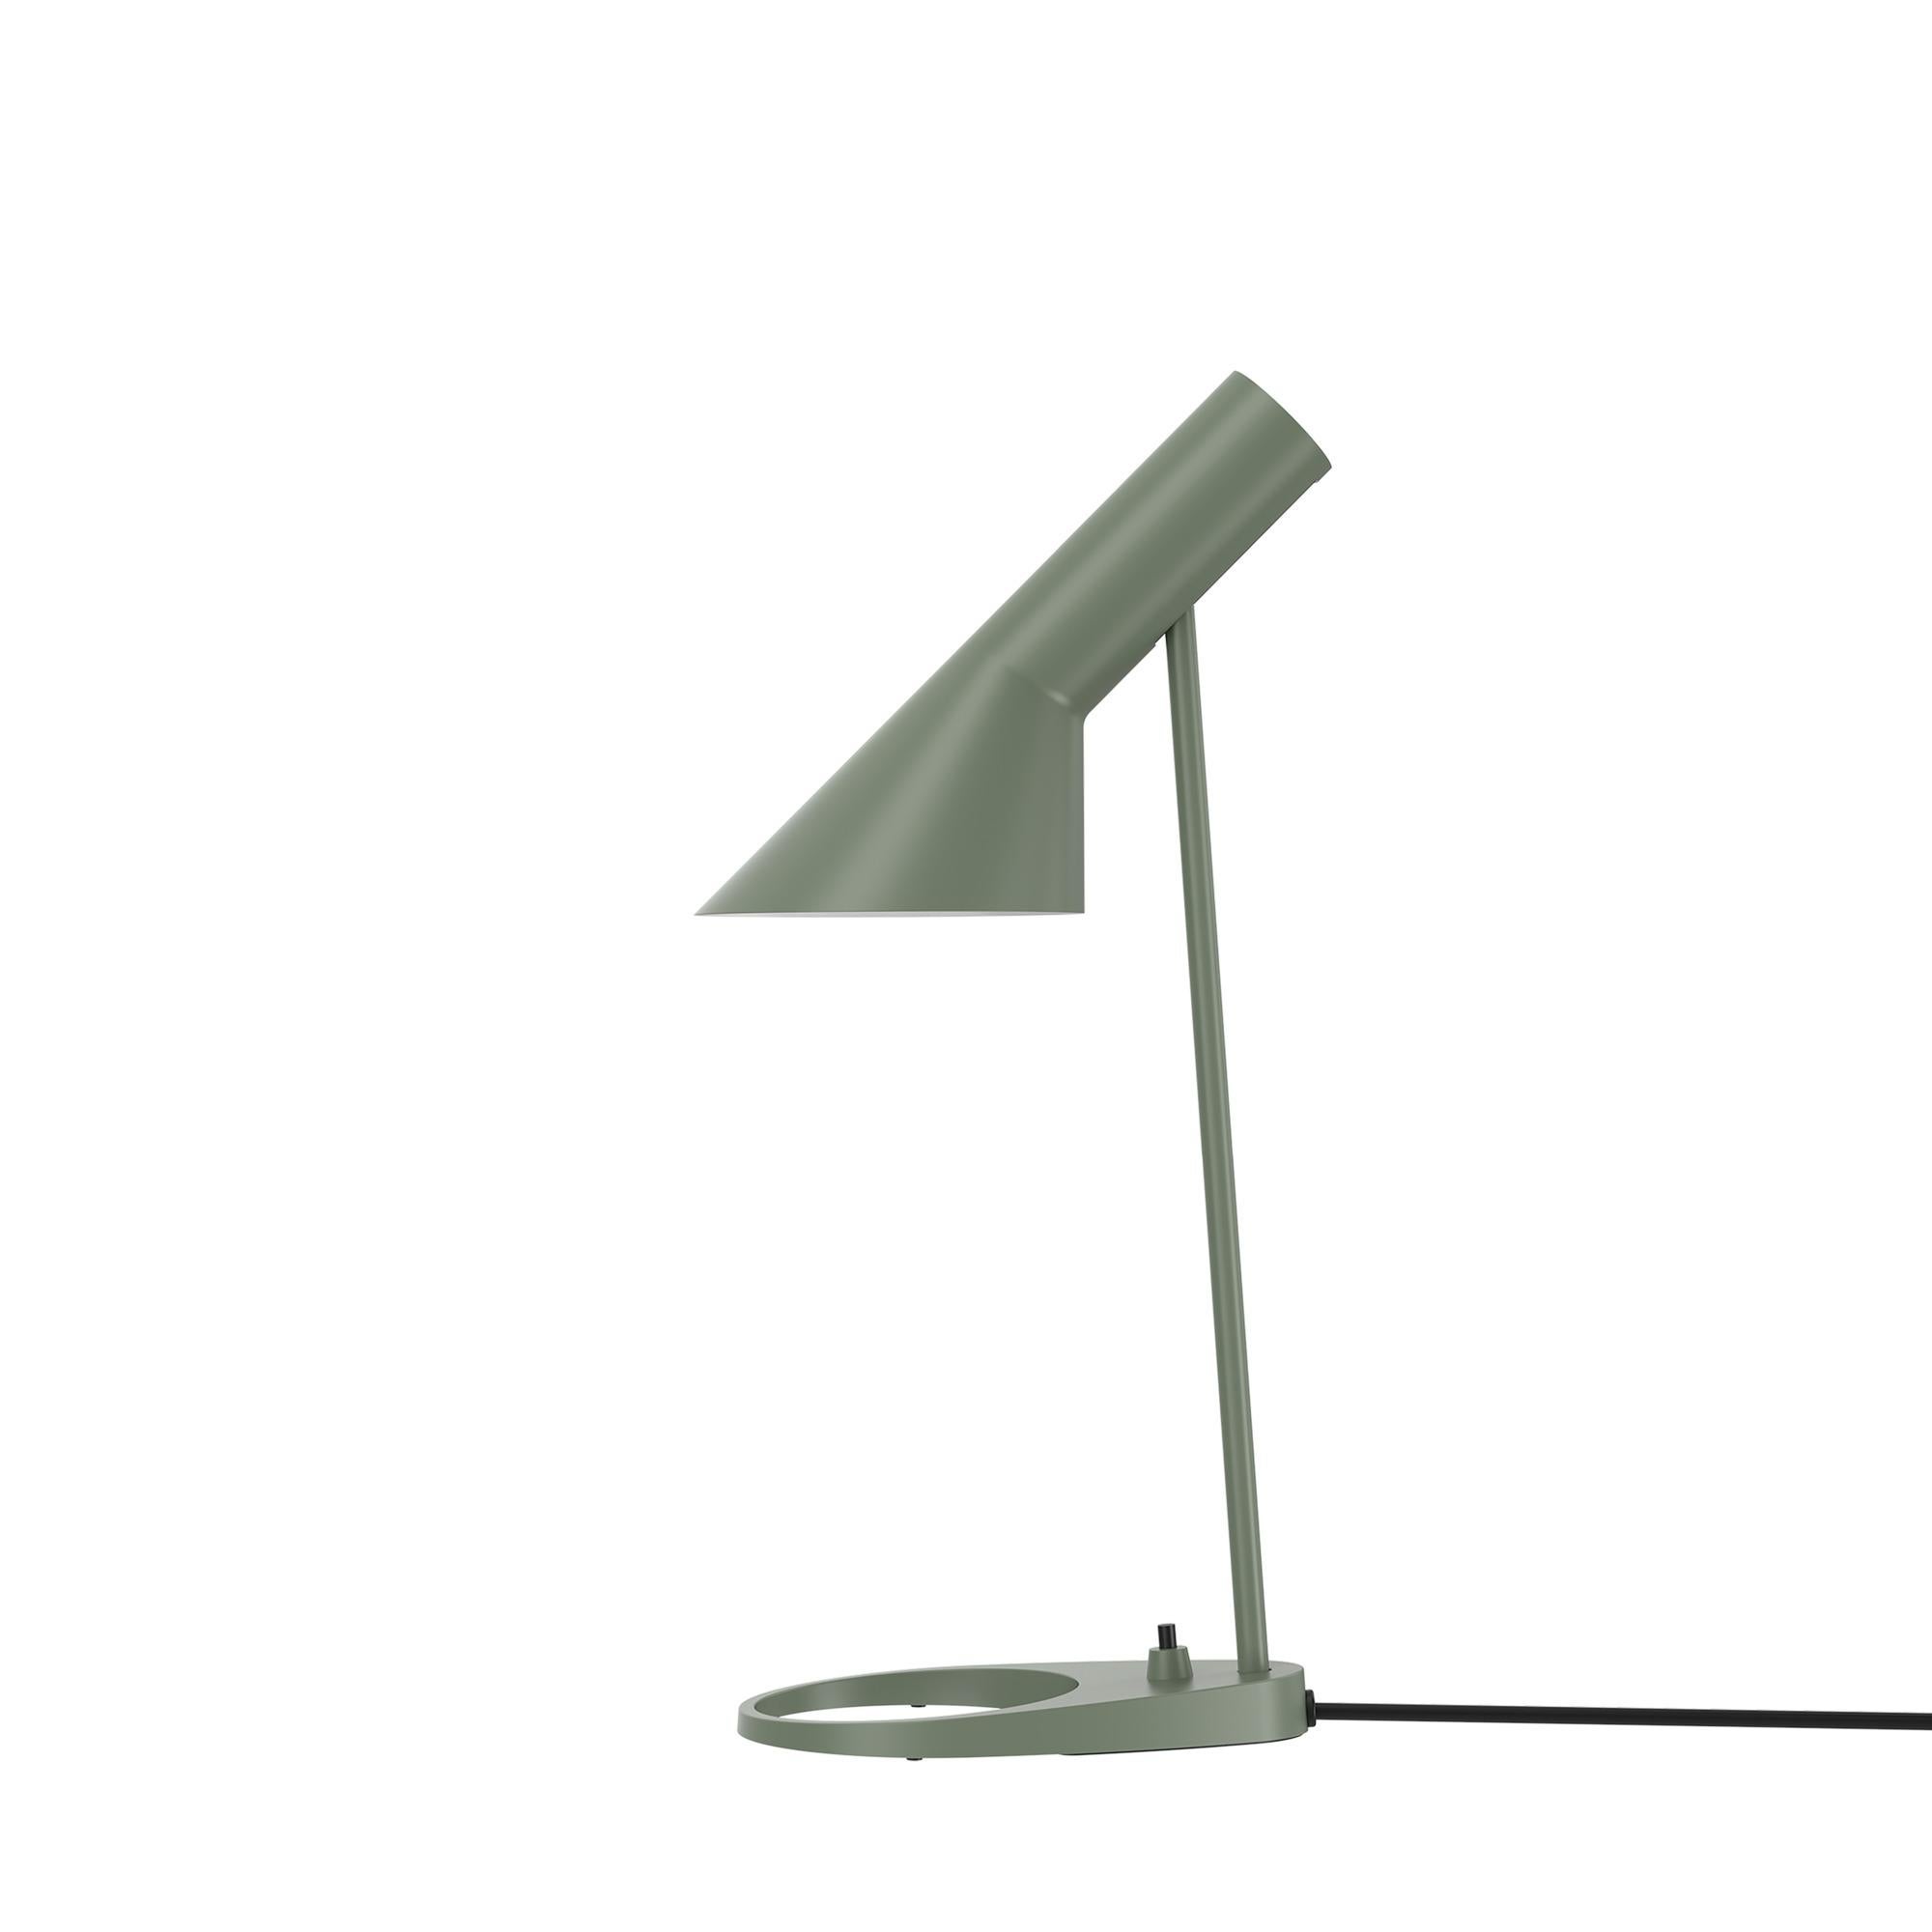 Arne Jacobsen 'AJ Mini' Table Lamp in Soft Lemon for Louis Poulsen For Sale 10